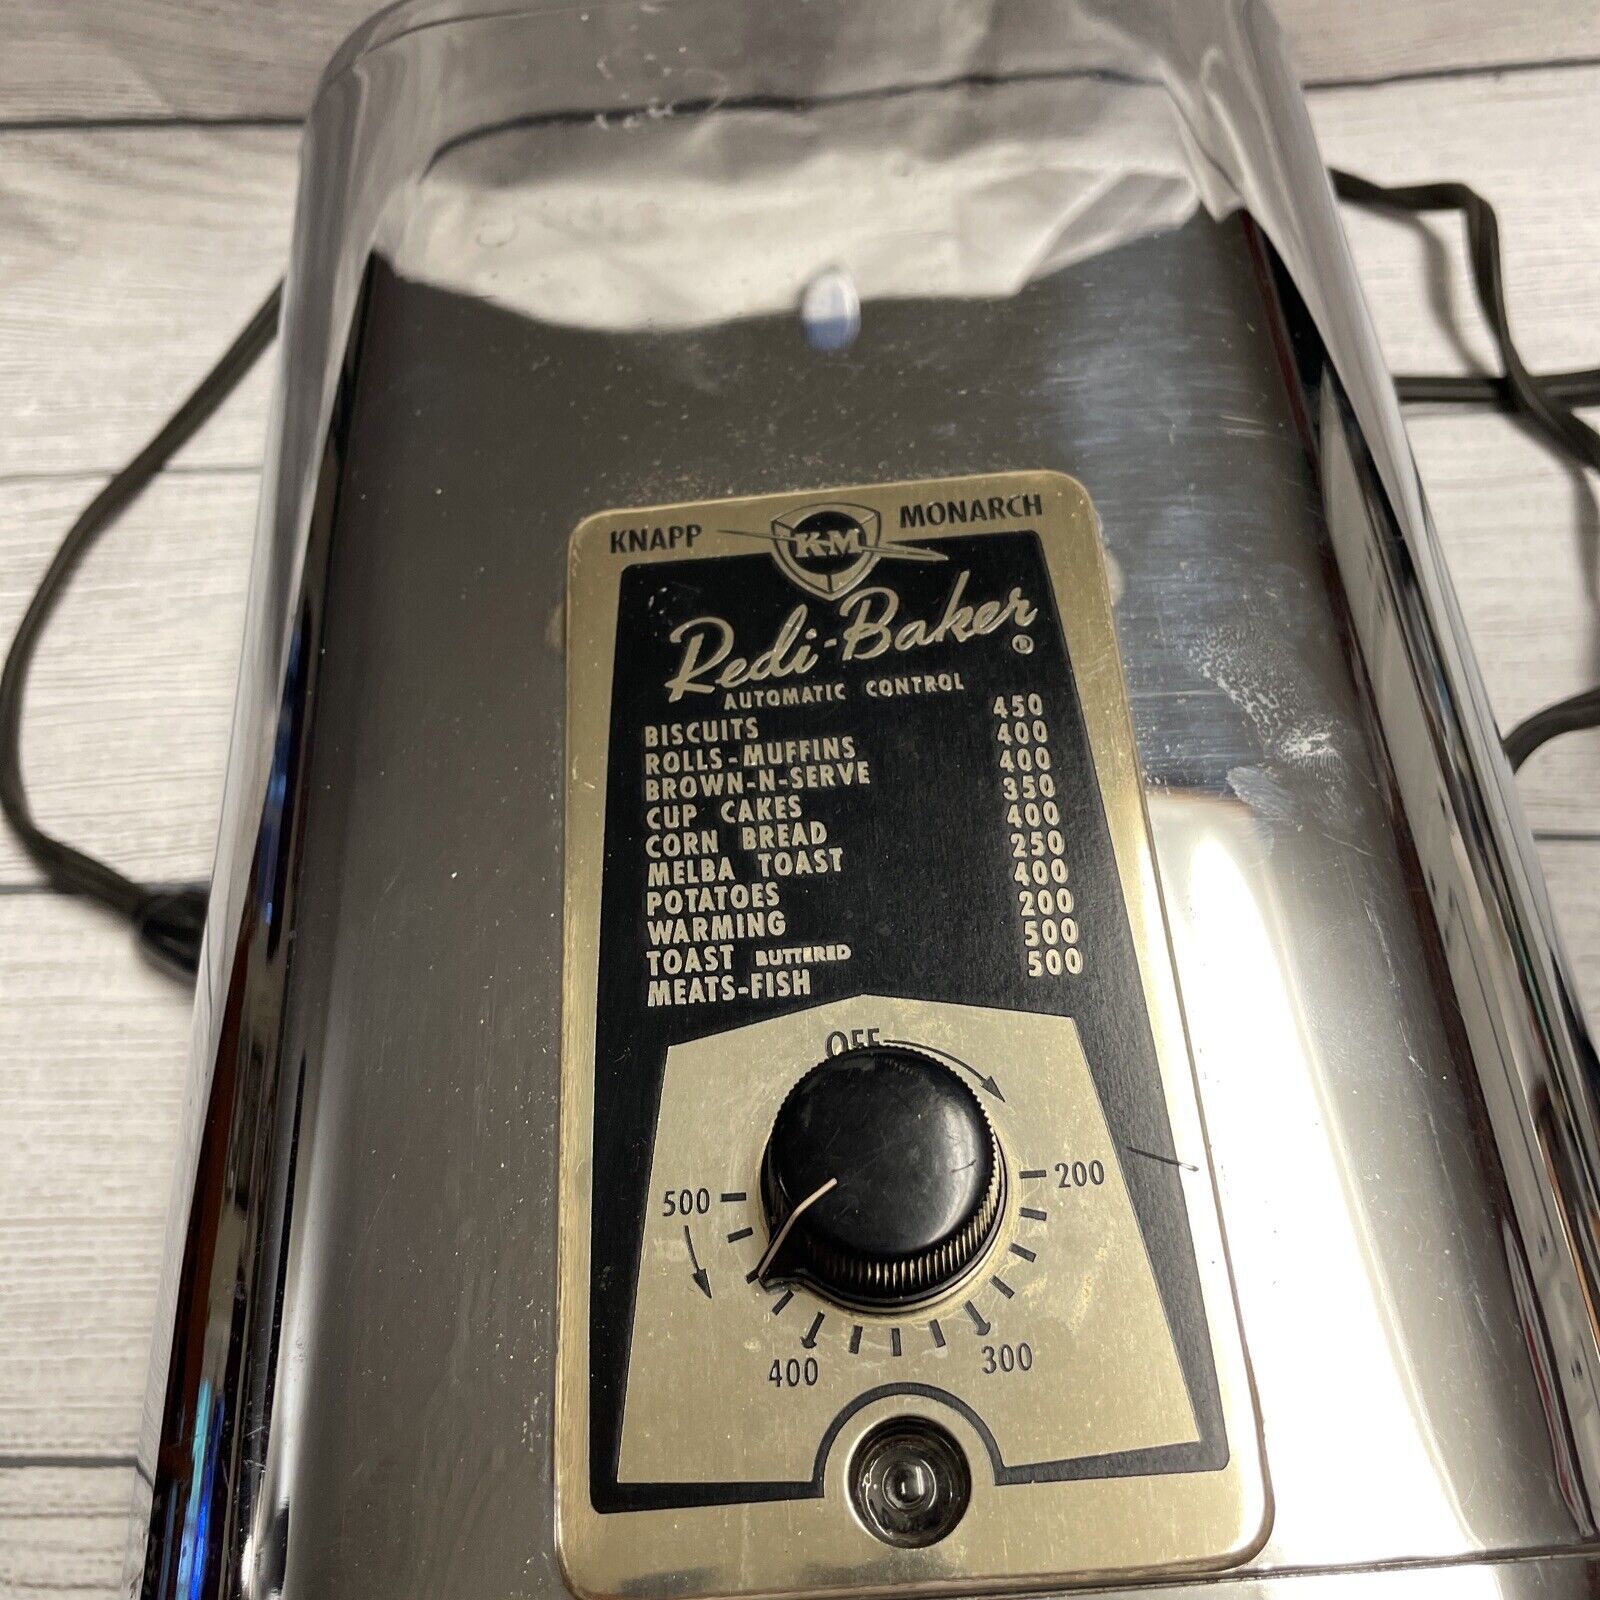 Vintage Knapp Monarch Redi Baker Chrome Cooker Baking Counter Top Oven Appliance